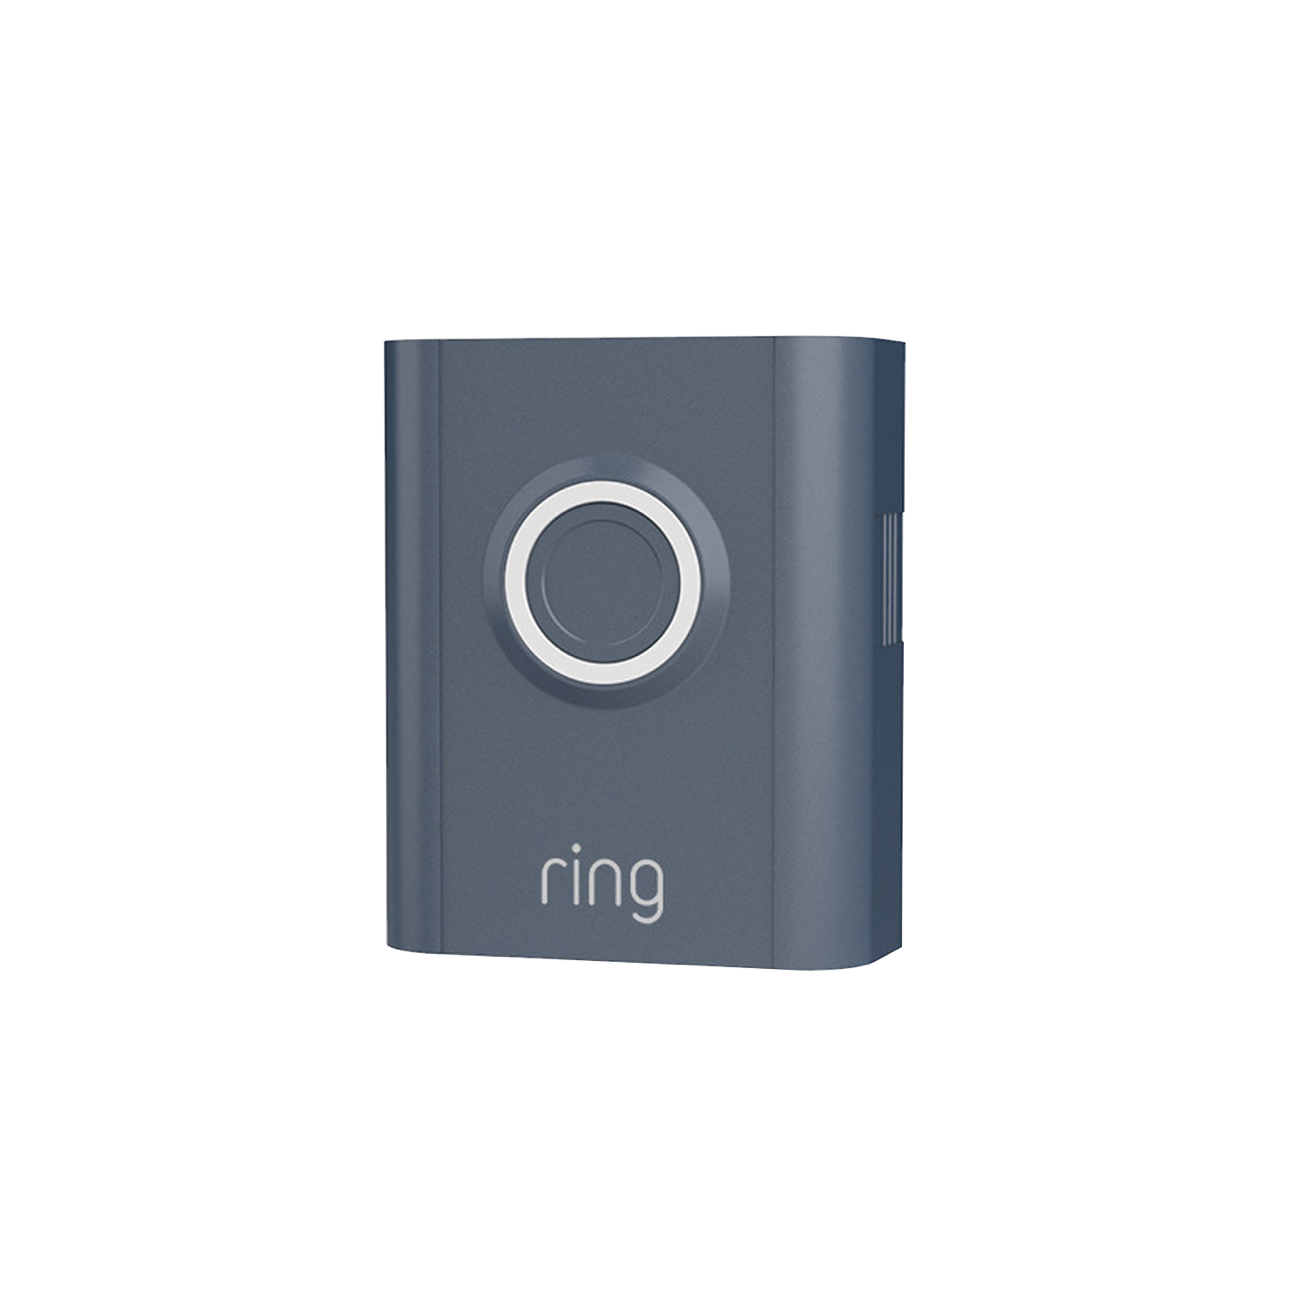 Interchangeable Faceplate (Video Doorbell 3, Video Doorbell 3 Plus, Video Doorbell 4, Battery Video Doorbell Plus, Battery Video Doorbell Pro)